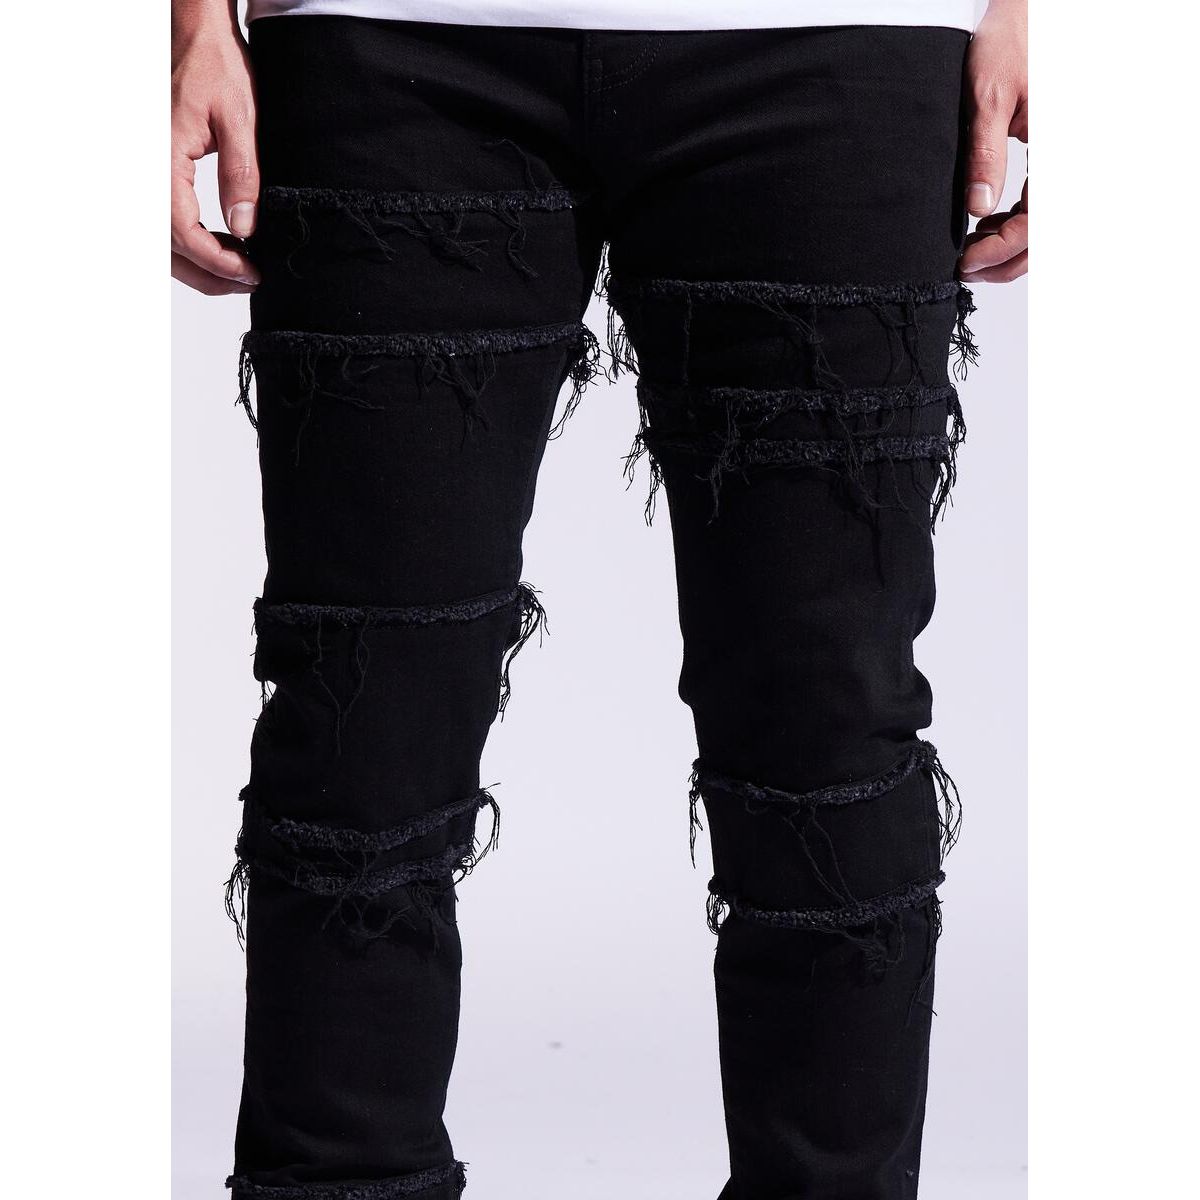 Embellish Black Distressed Blade Denim Jeans (EMBF221-111)